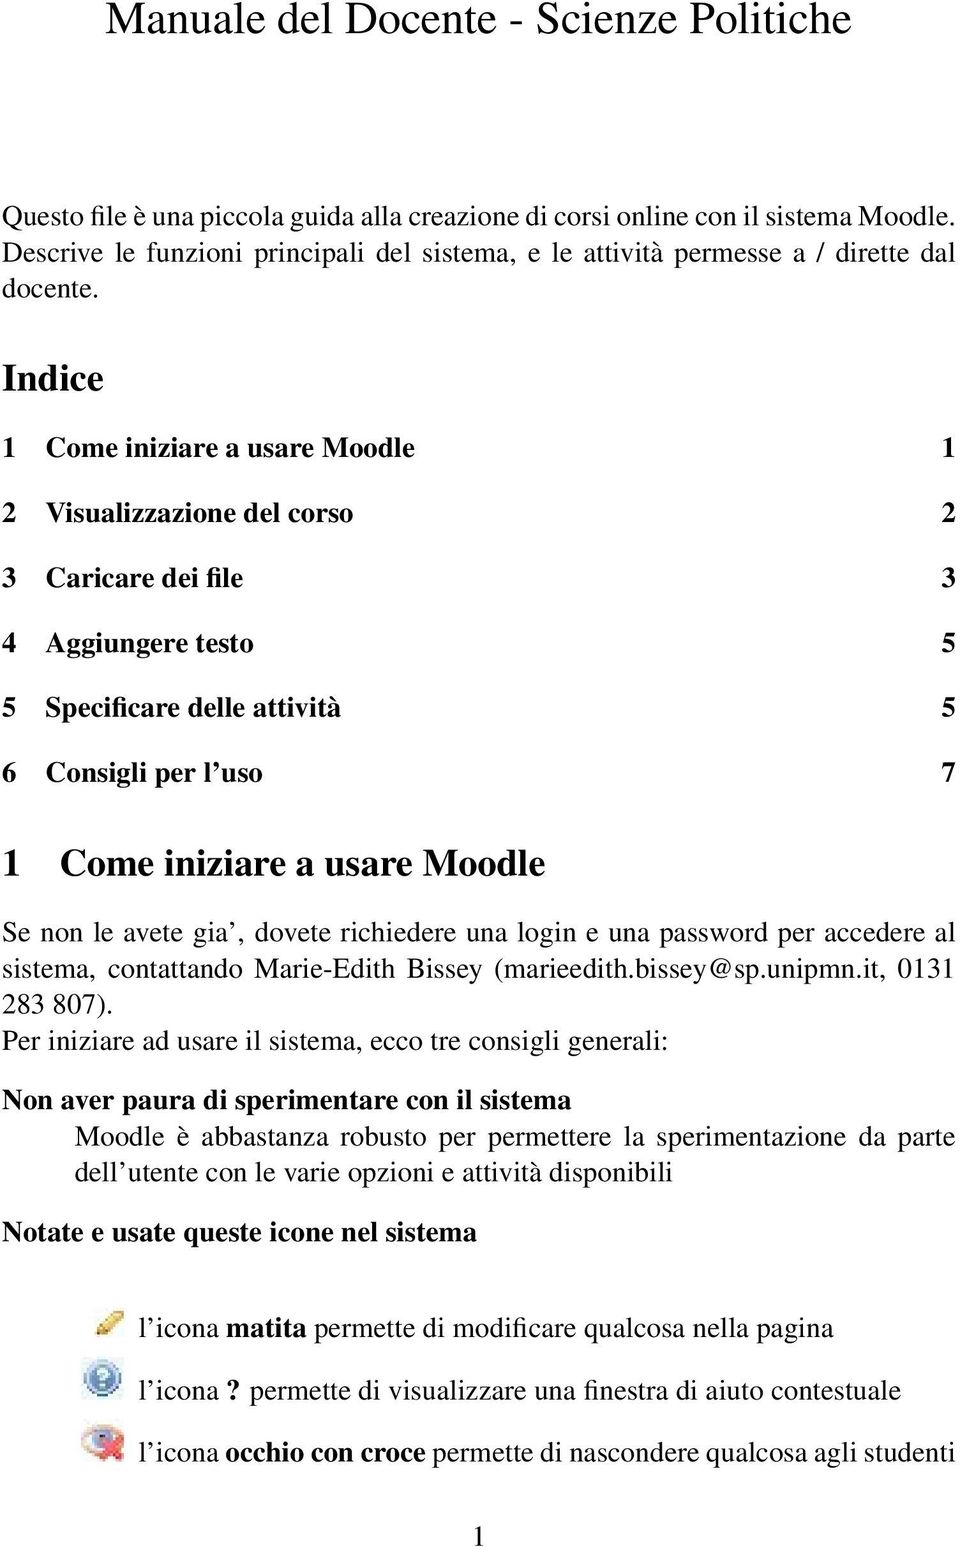 Indice 1 Come iniziare a usare Moodle 1 2 Visualizzazione del corso 2 3 Caricare dei file 3 4 Aggiungere testo 5 5 Specificare delle attività 5 6 Consigli per l uso 7 1 Come iniziare a usare Moodle